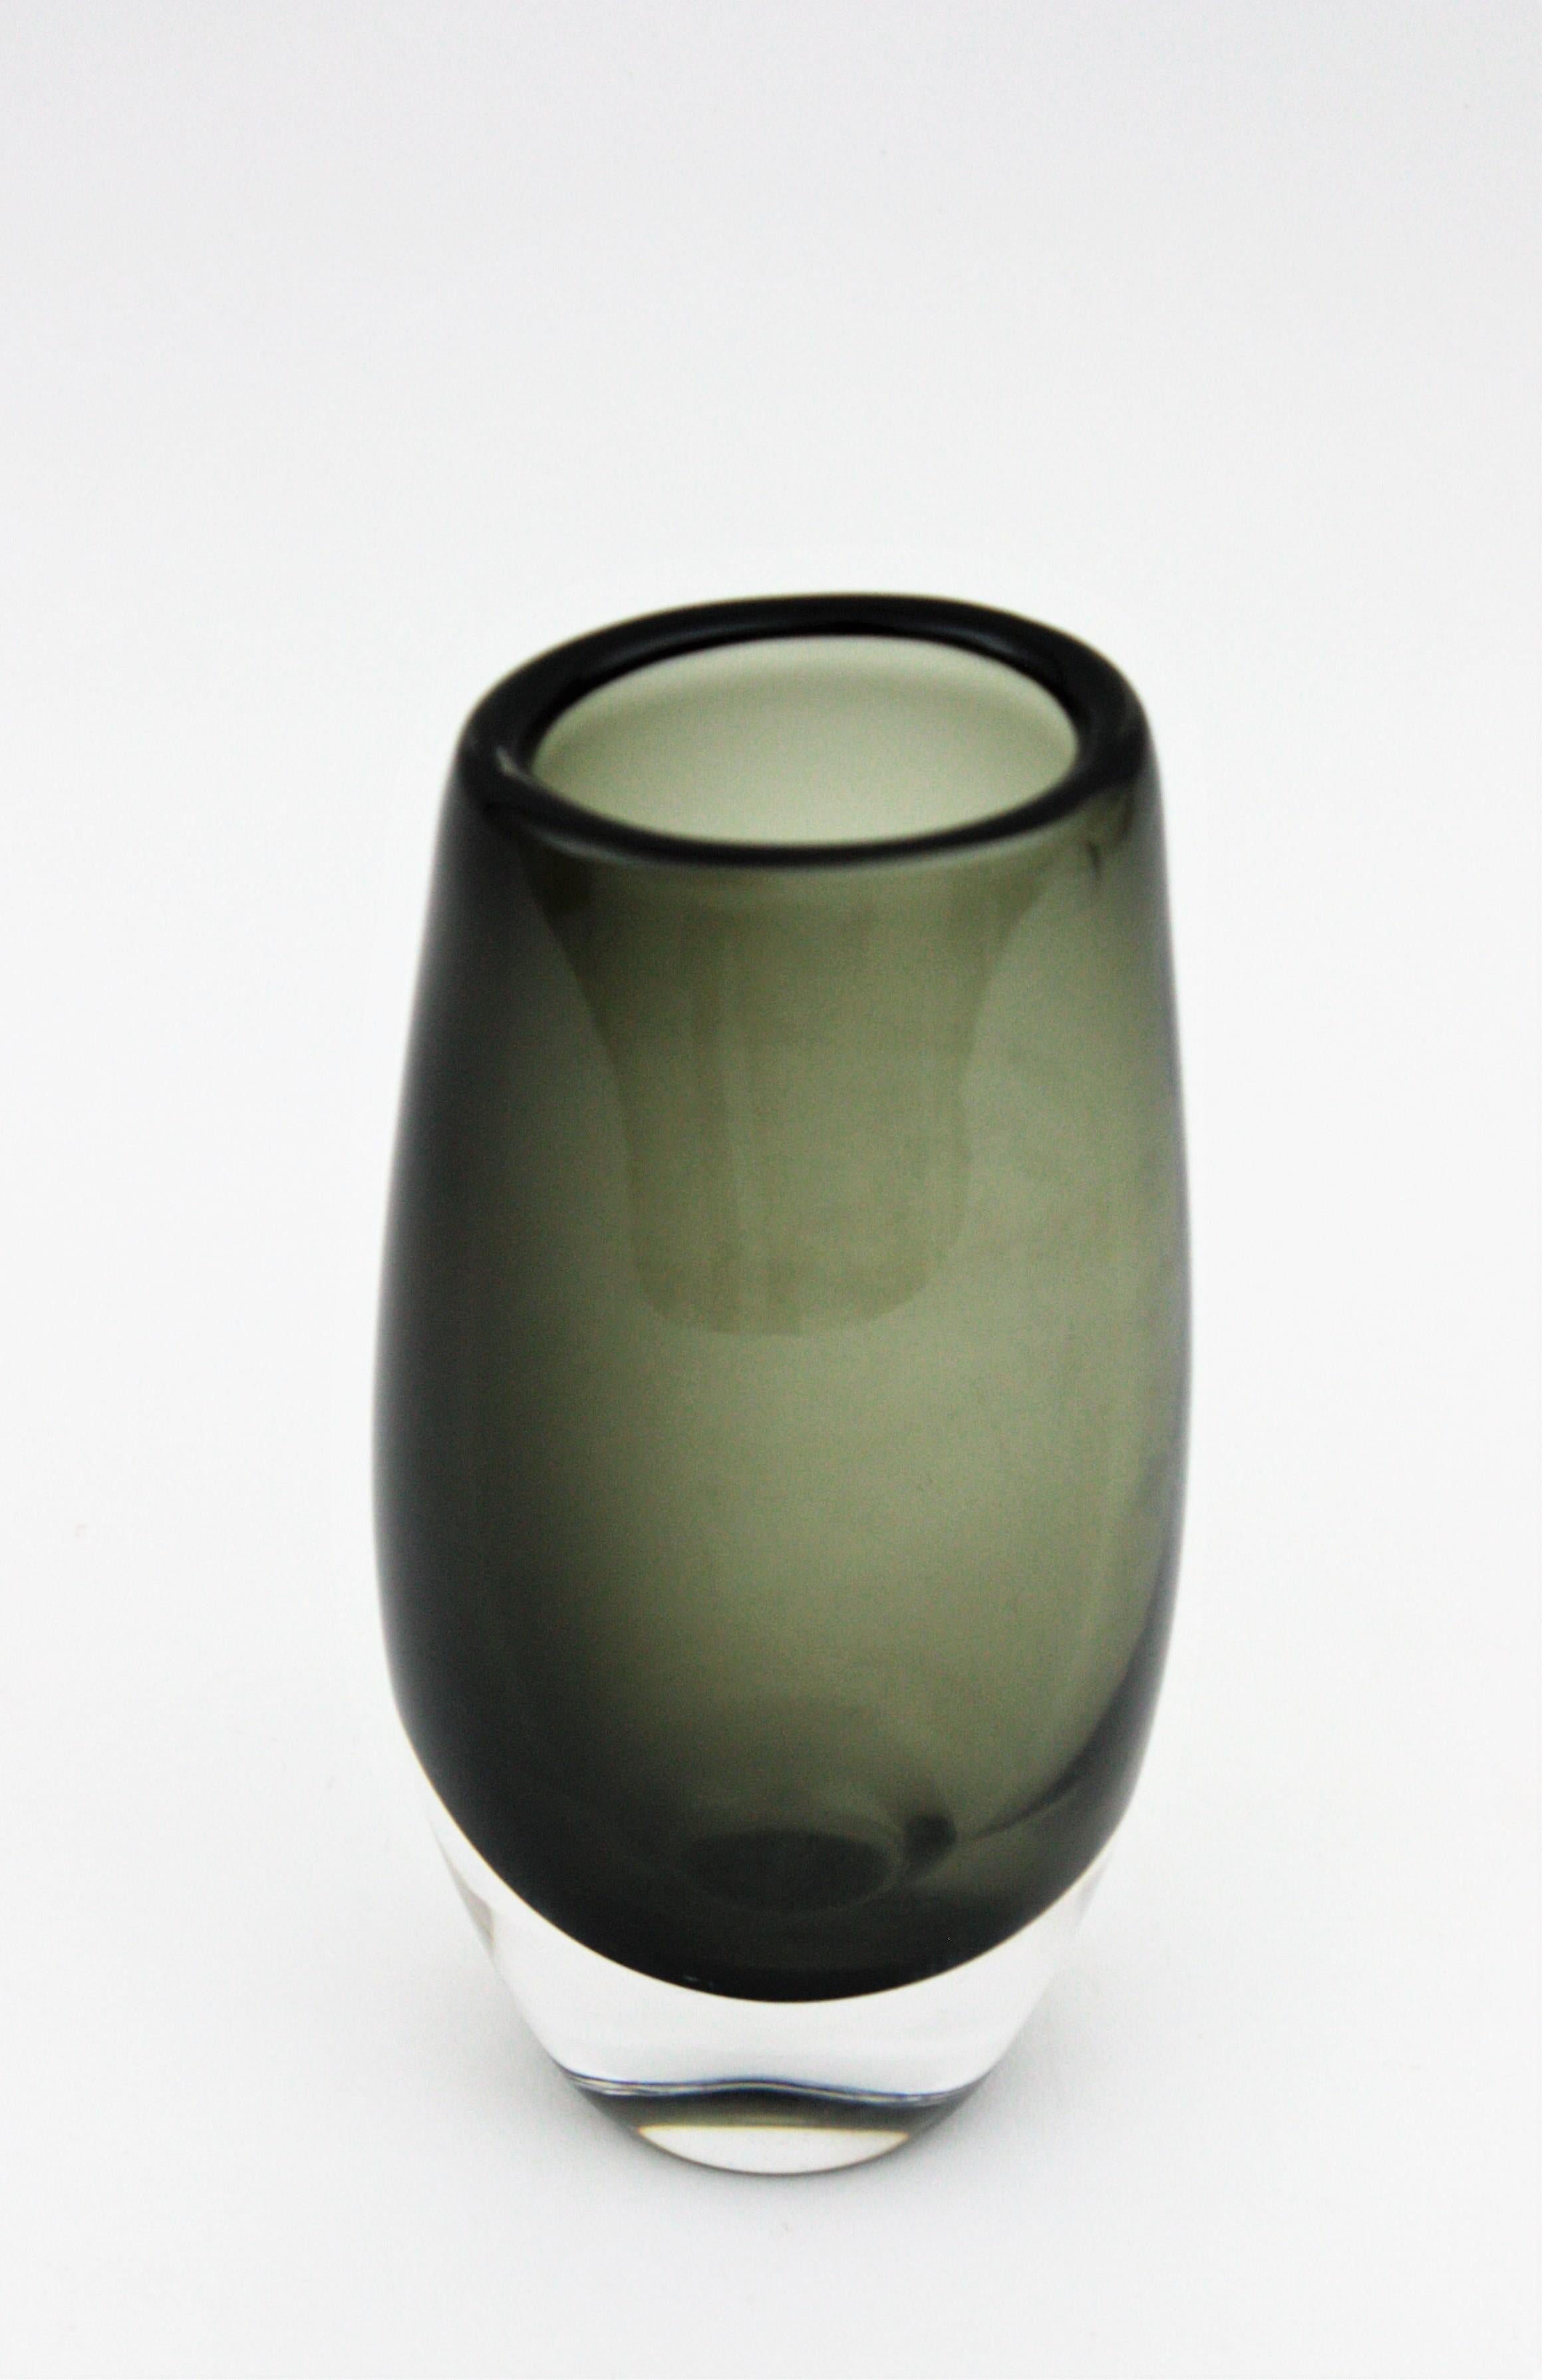 Elegante Vase aus rauchgrauem und klarem Sommerso-Glas. Entworfen von Nils Landberg und hergestellt von Orrefors. Schweden, 1970er Jahre.
Diese mundgeblasene Glasvase hat ein wunderschönes Design mit rauchgrauem Glas, das in Klarglas eingefasst